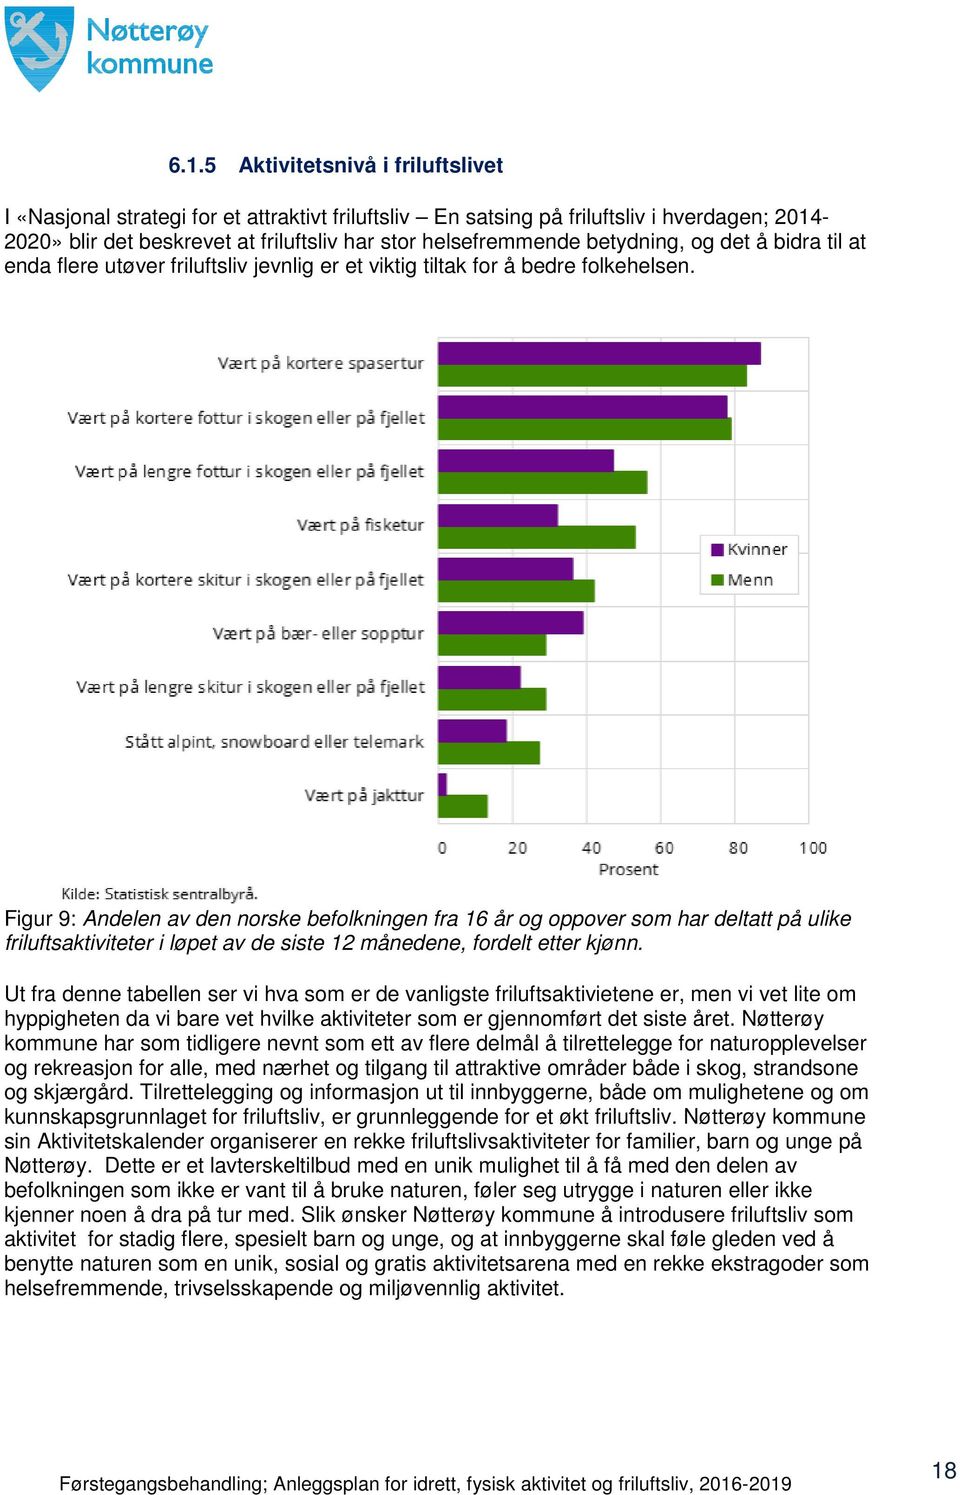 Figur 9: Andelen av den norske befolkningen fra 16 år og oppover som har deltatt på ulike friluftsaktiviteter i løpet av de siste 12 månedene, fordelt etter kjønn.